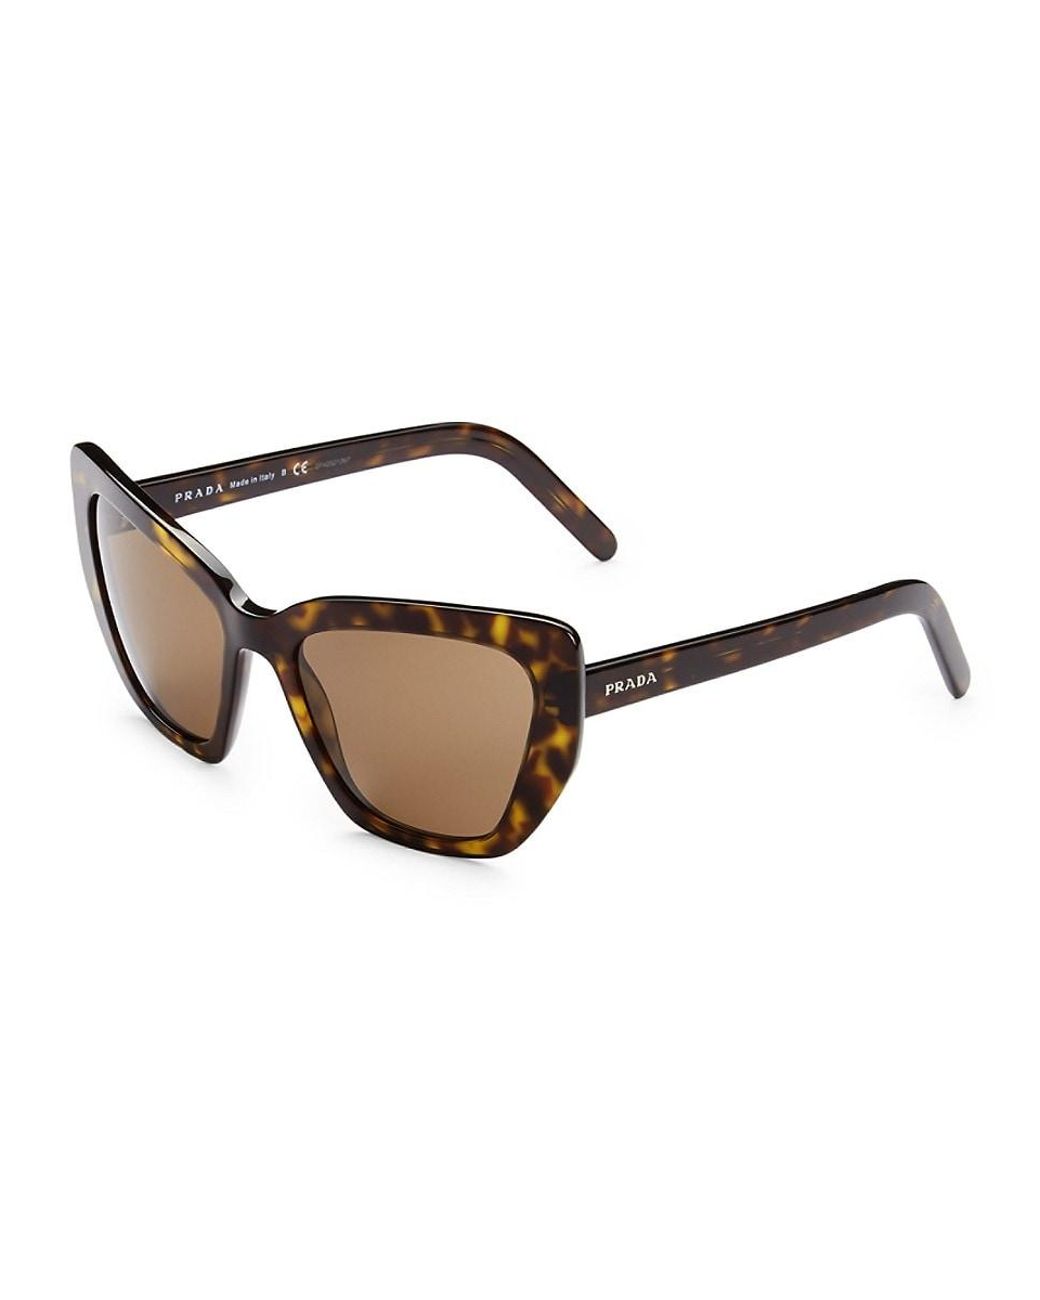 Prada 55mm Cat Eye Sunglasses in Brown | Lyst UK